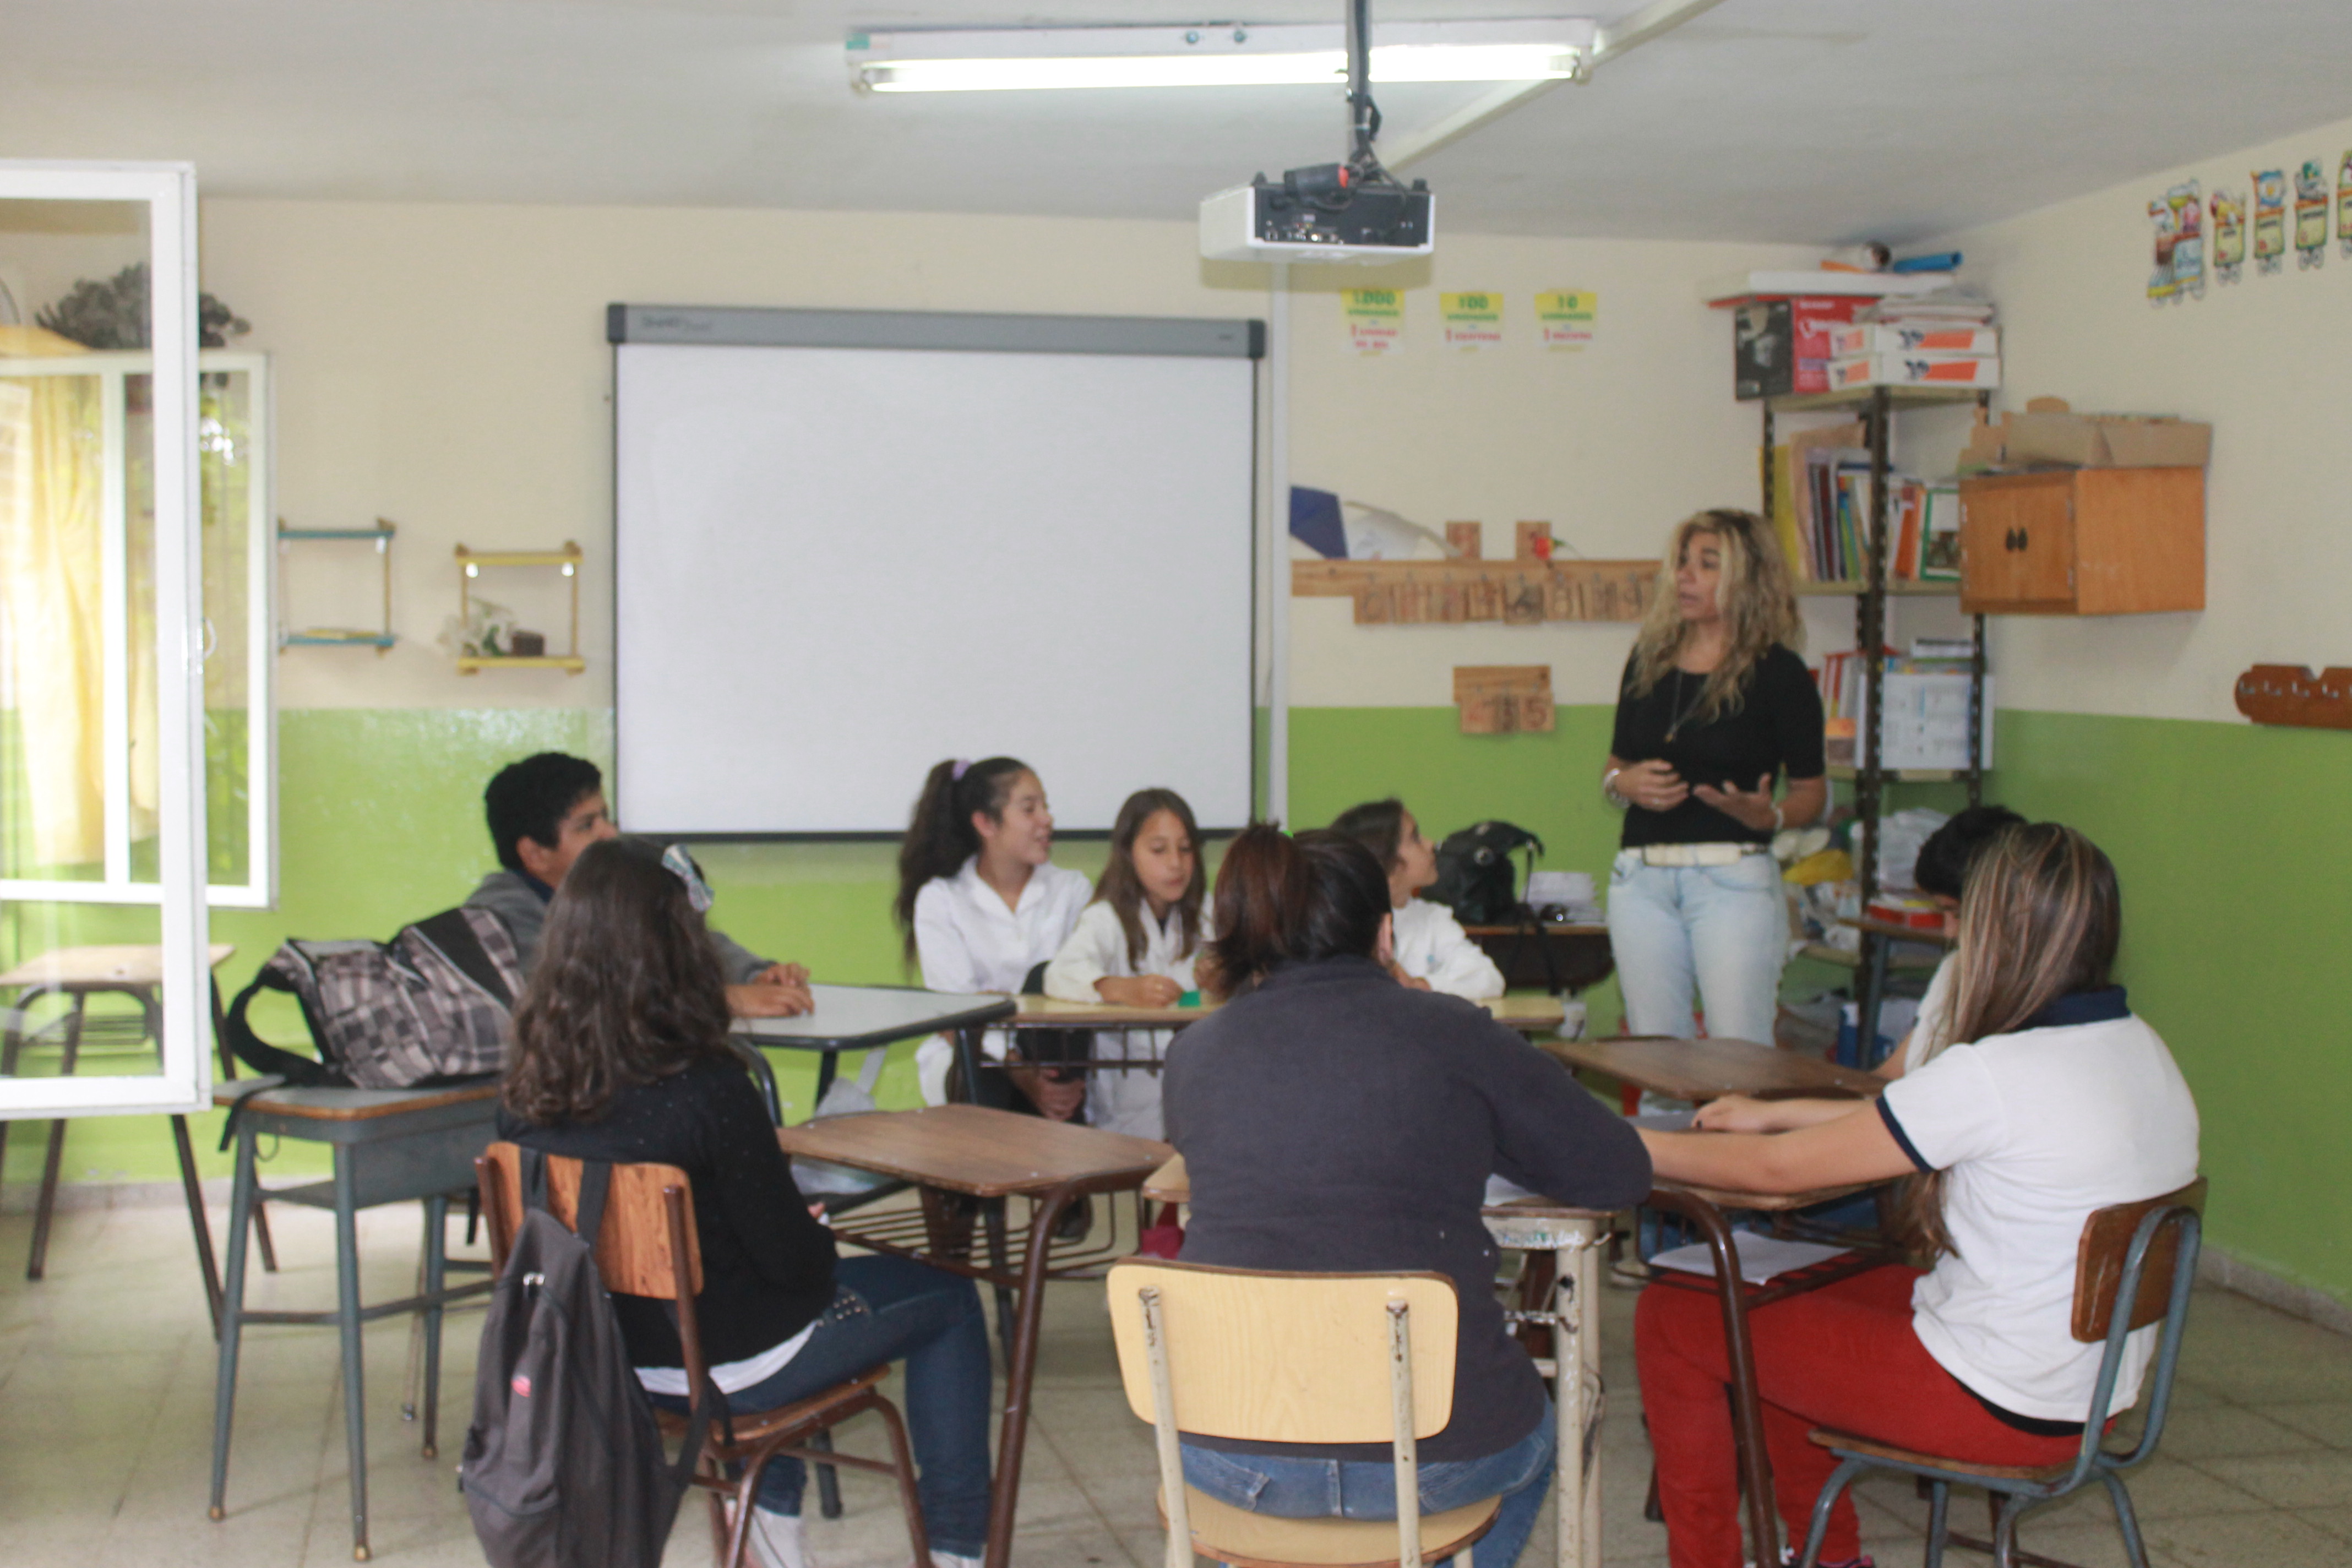 Los embajadores ambientales son un grupo de 15 alumnos de la Escuela N°267 “Eriberto Mendoza”